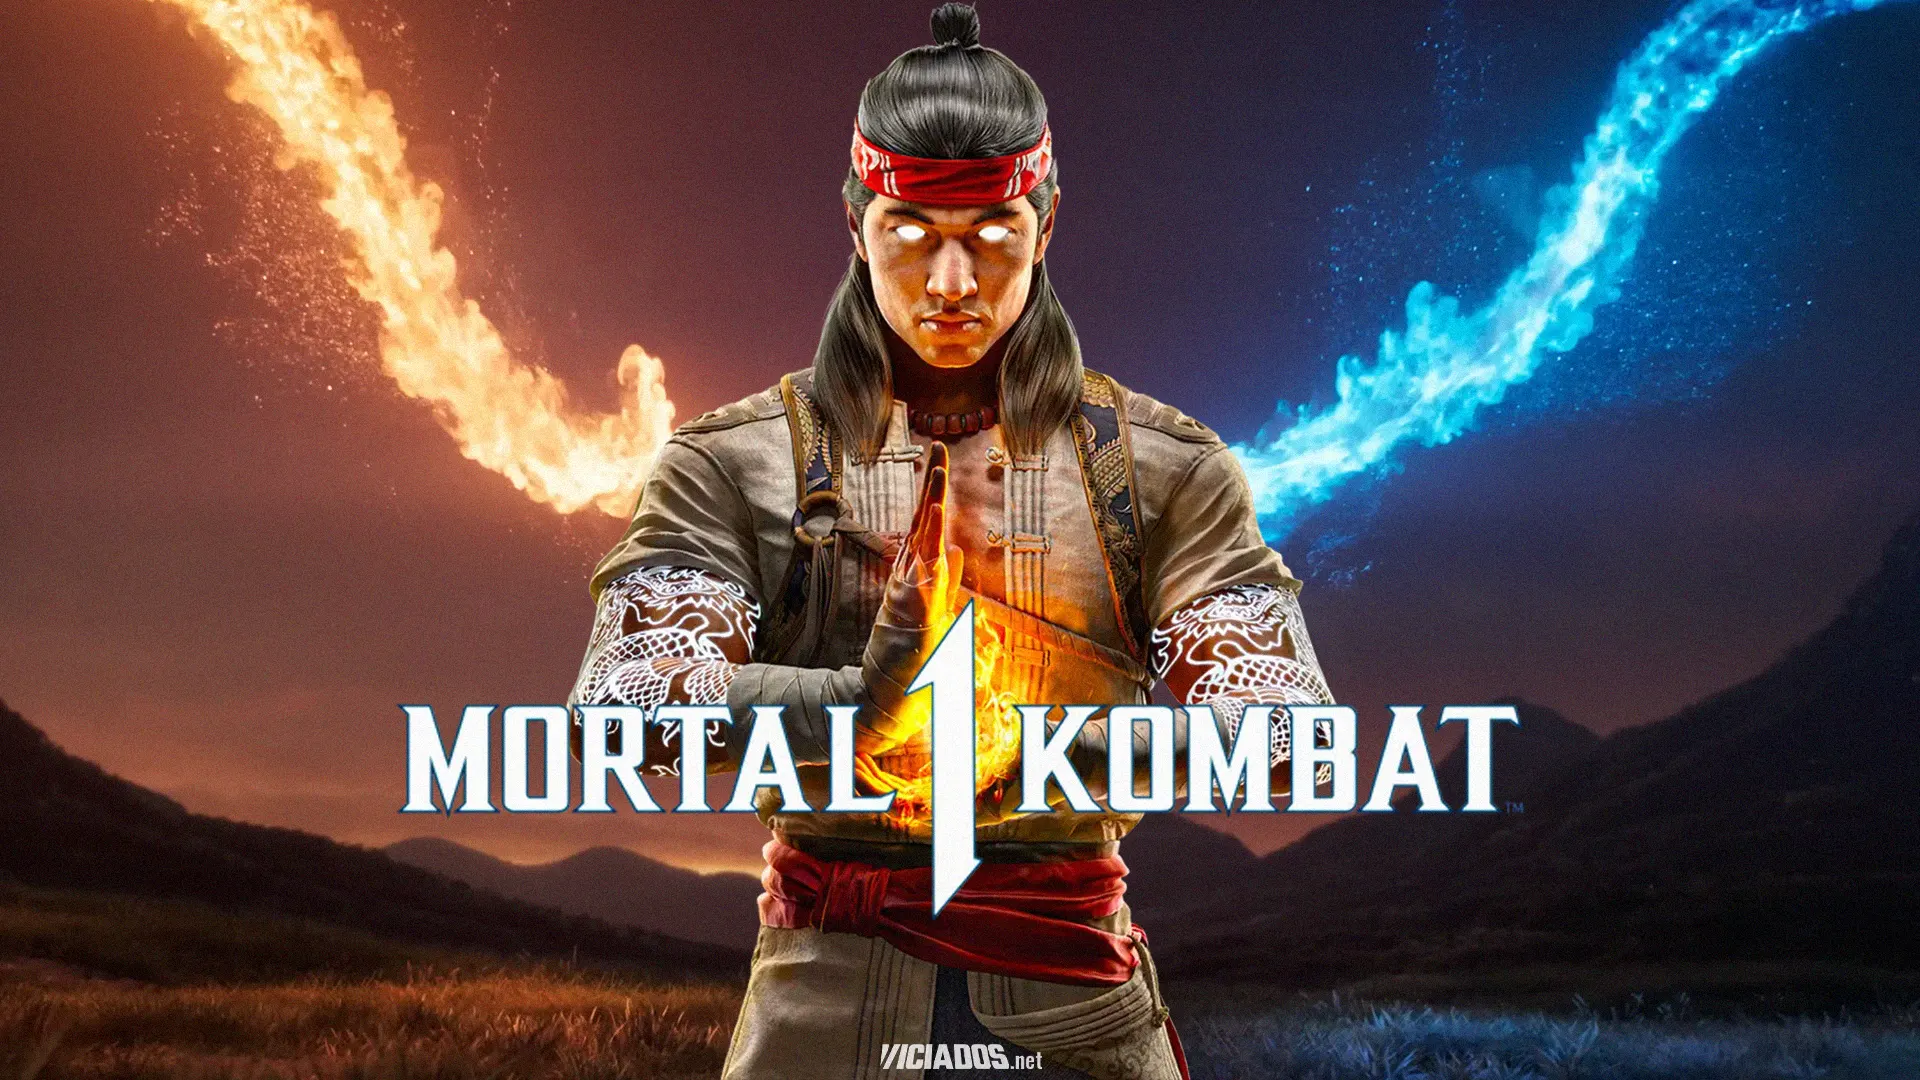 Hora do Kombate! Mortal Kombat 1 ganha sua primeira épica gameplay; Confira! 2023 Viciados